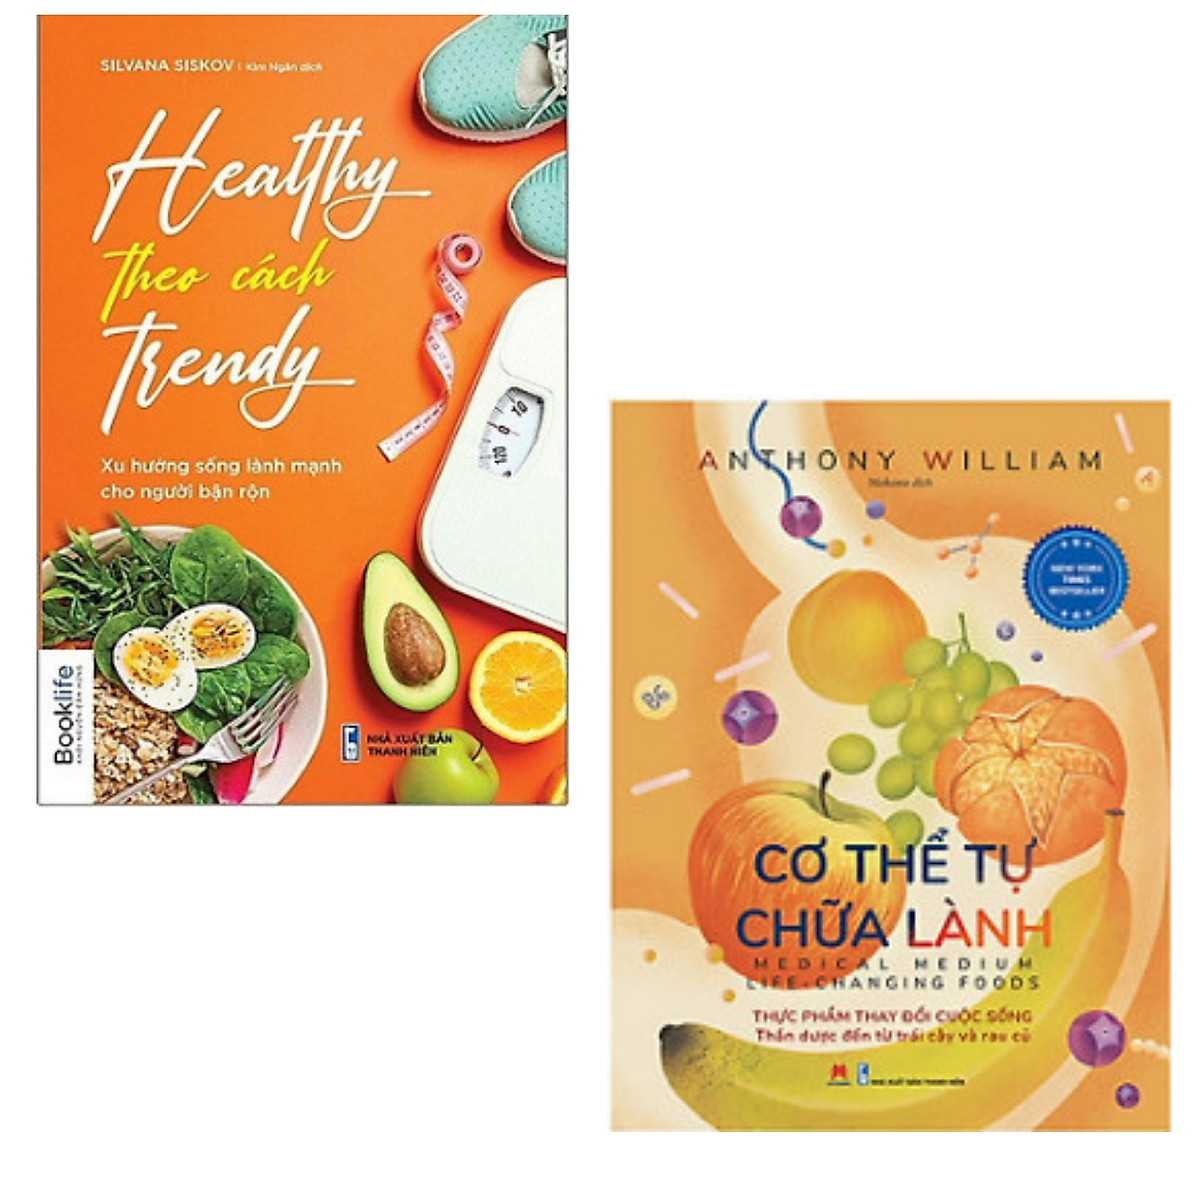 Combo 2 cuốn sách hay về Sức khỏe dành cho người bận rộn: Healthy theo cách trendy + Cơ thể tự chữa lành- Thực phẩm thay đổi cuộc sống